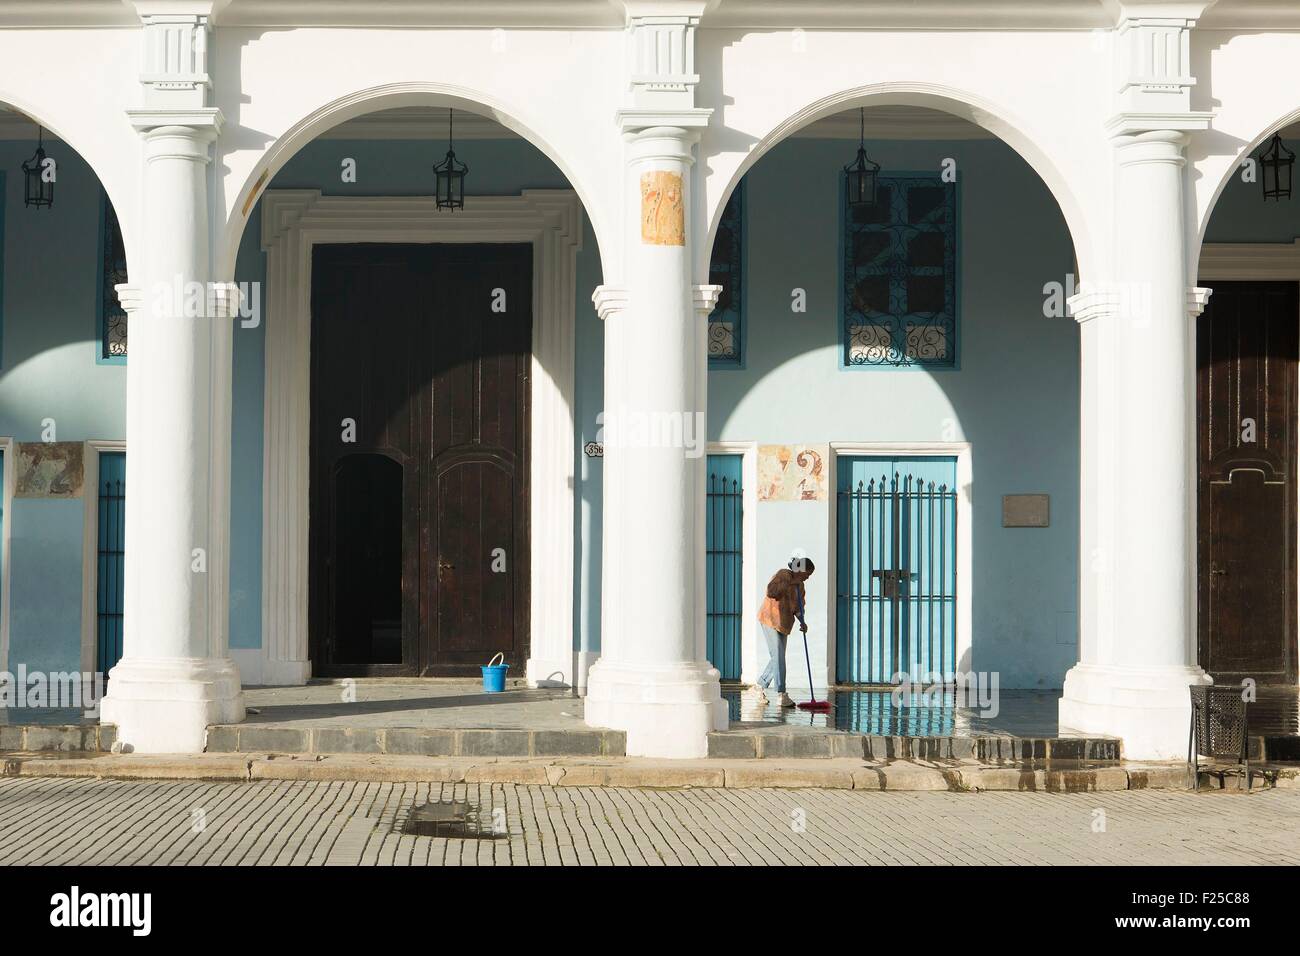 Cuba, Ciudad de la Habana Province, La Havana, La Habana Vieja district elencati come patrimonio mondiale dall' UNESCO, donna sotto le arcate del Plaza Vieja (la piazza vecchia) Foto Stock